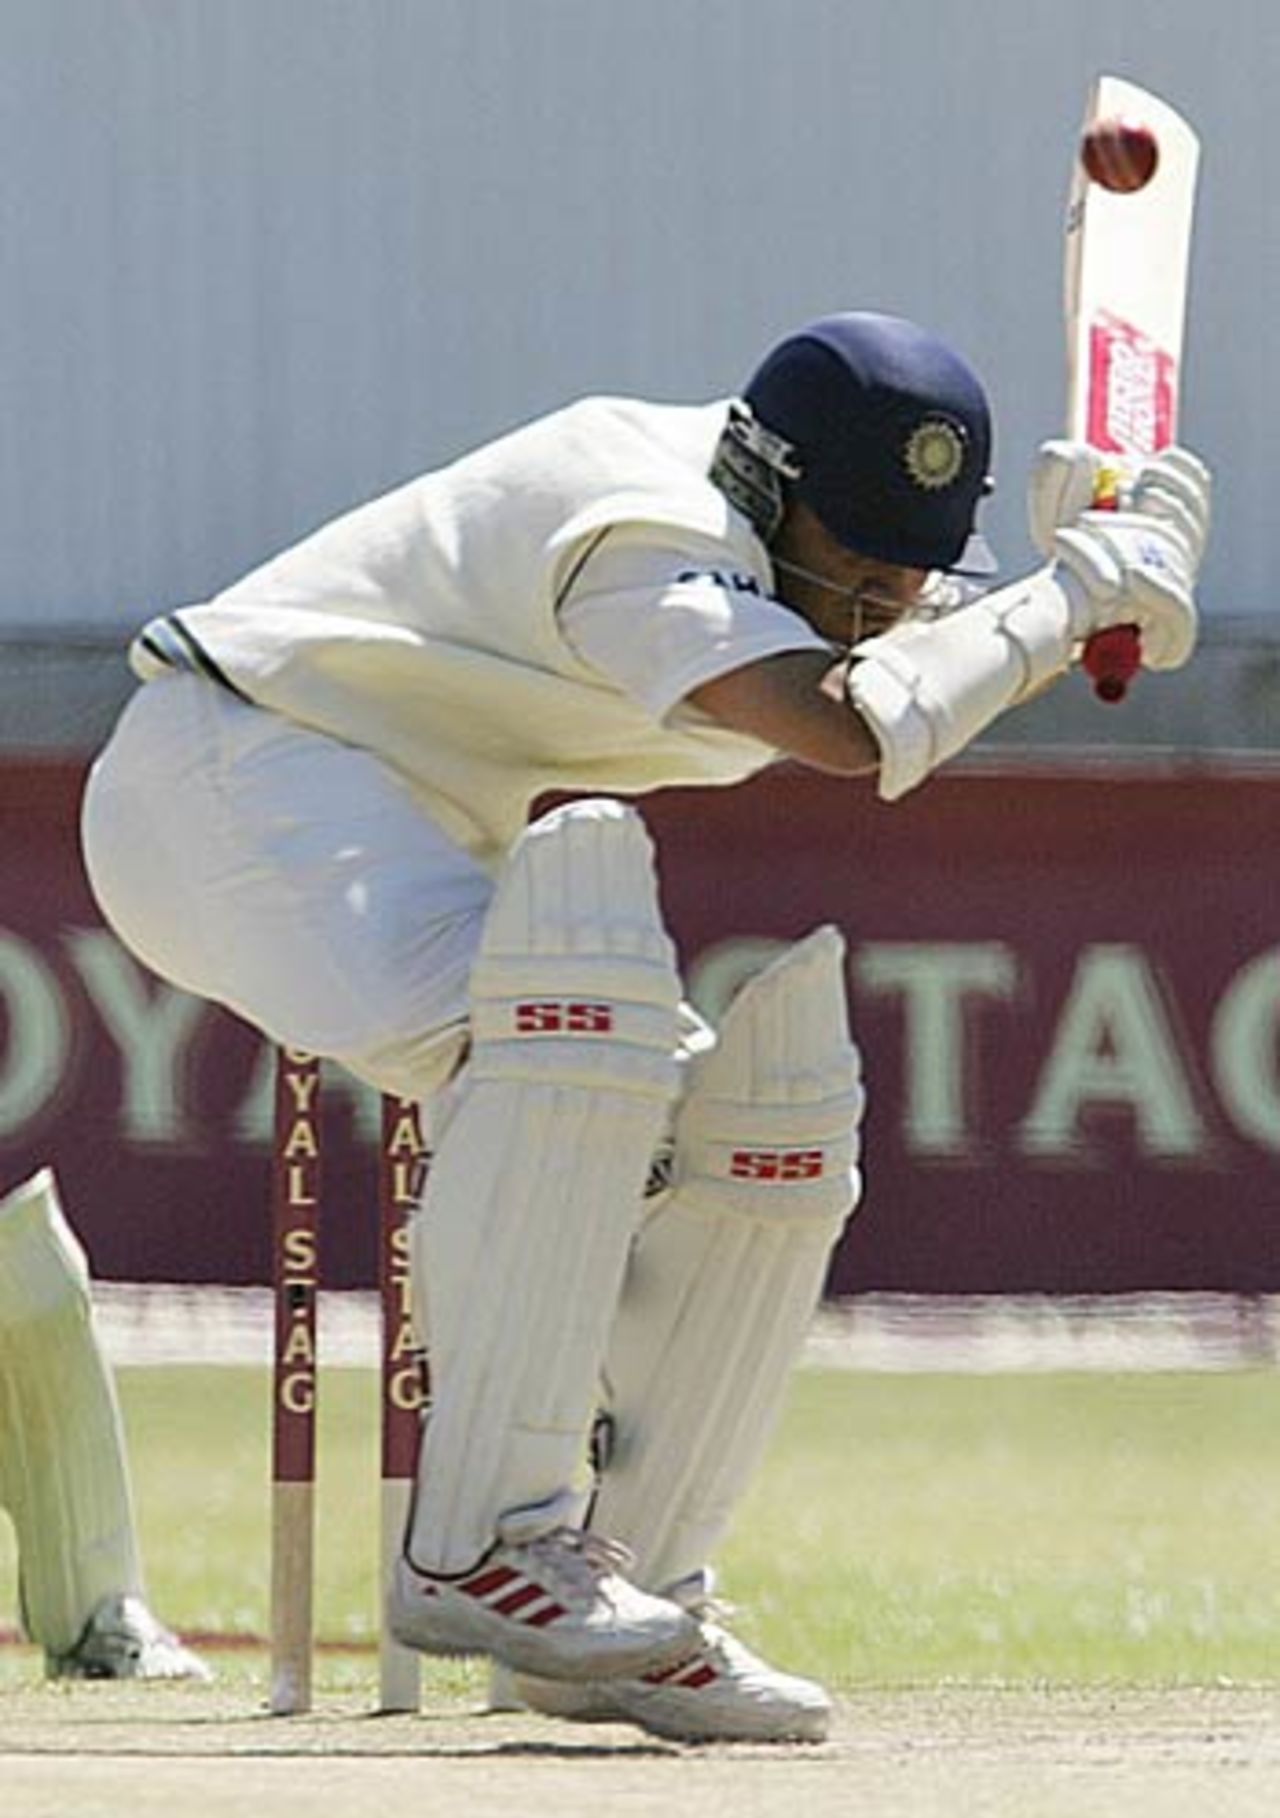 Sourav Ganguly's bat pokes out dangerously as he takes evasive action, Zimbabwe v India, 1st Test, Bulawayo, September 15, 2005